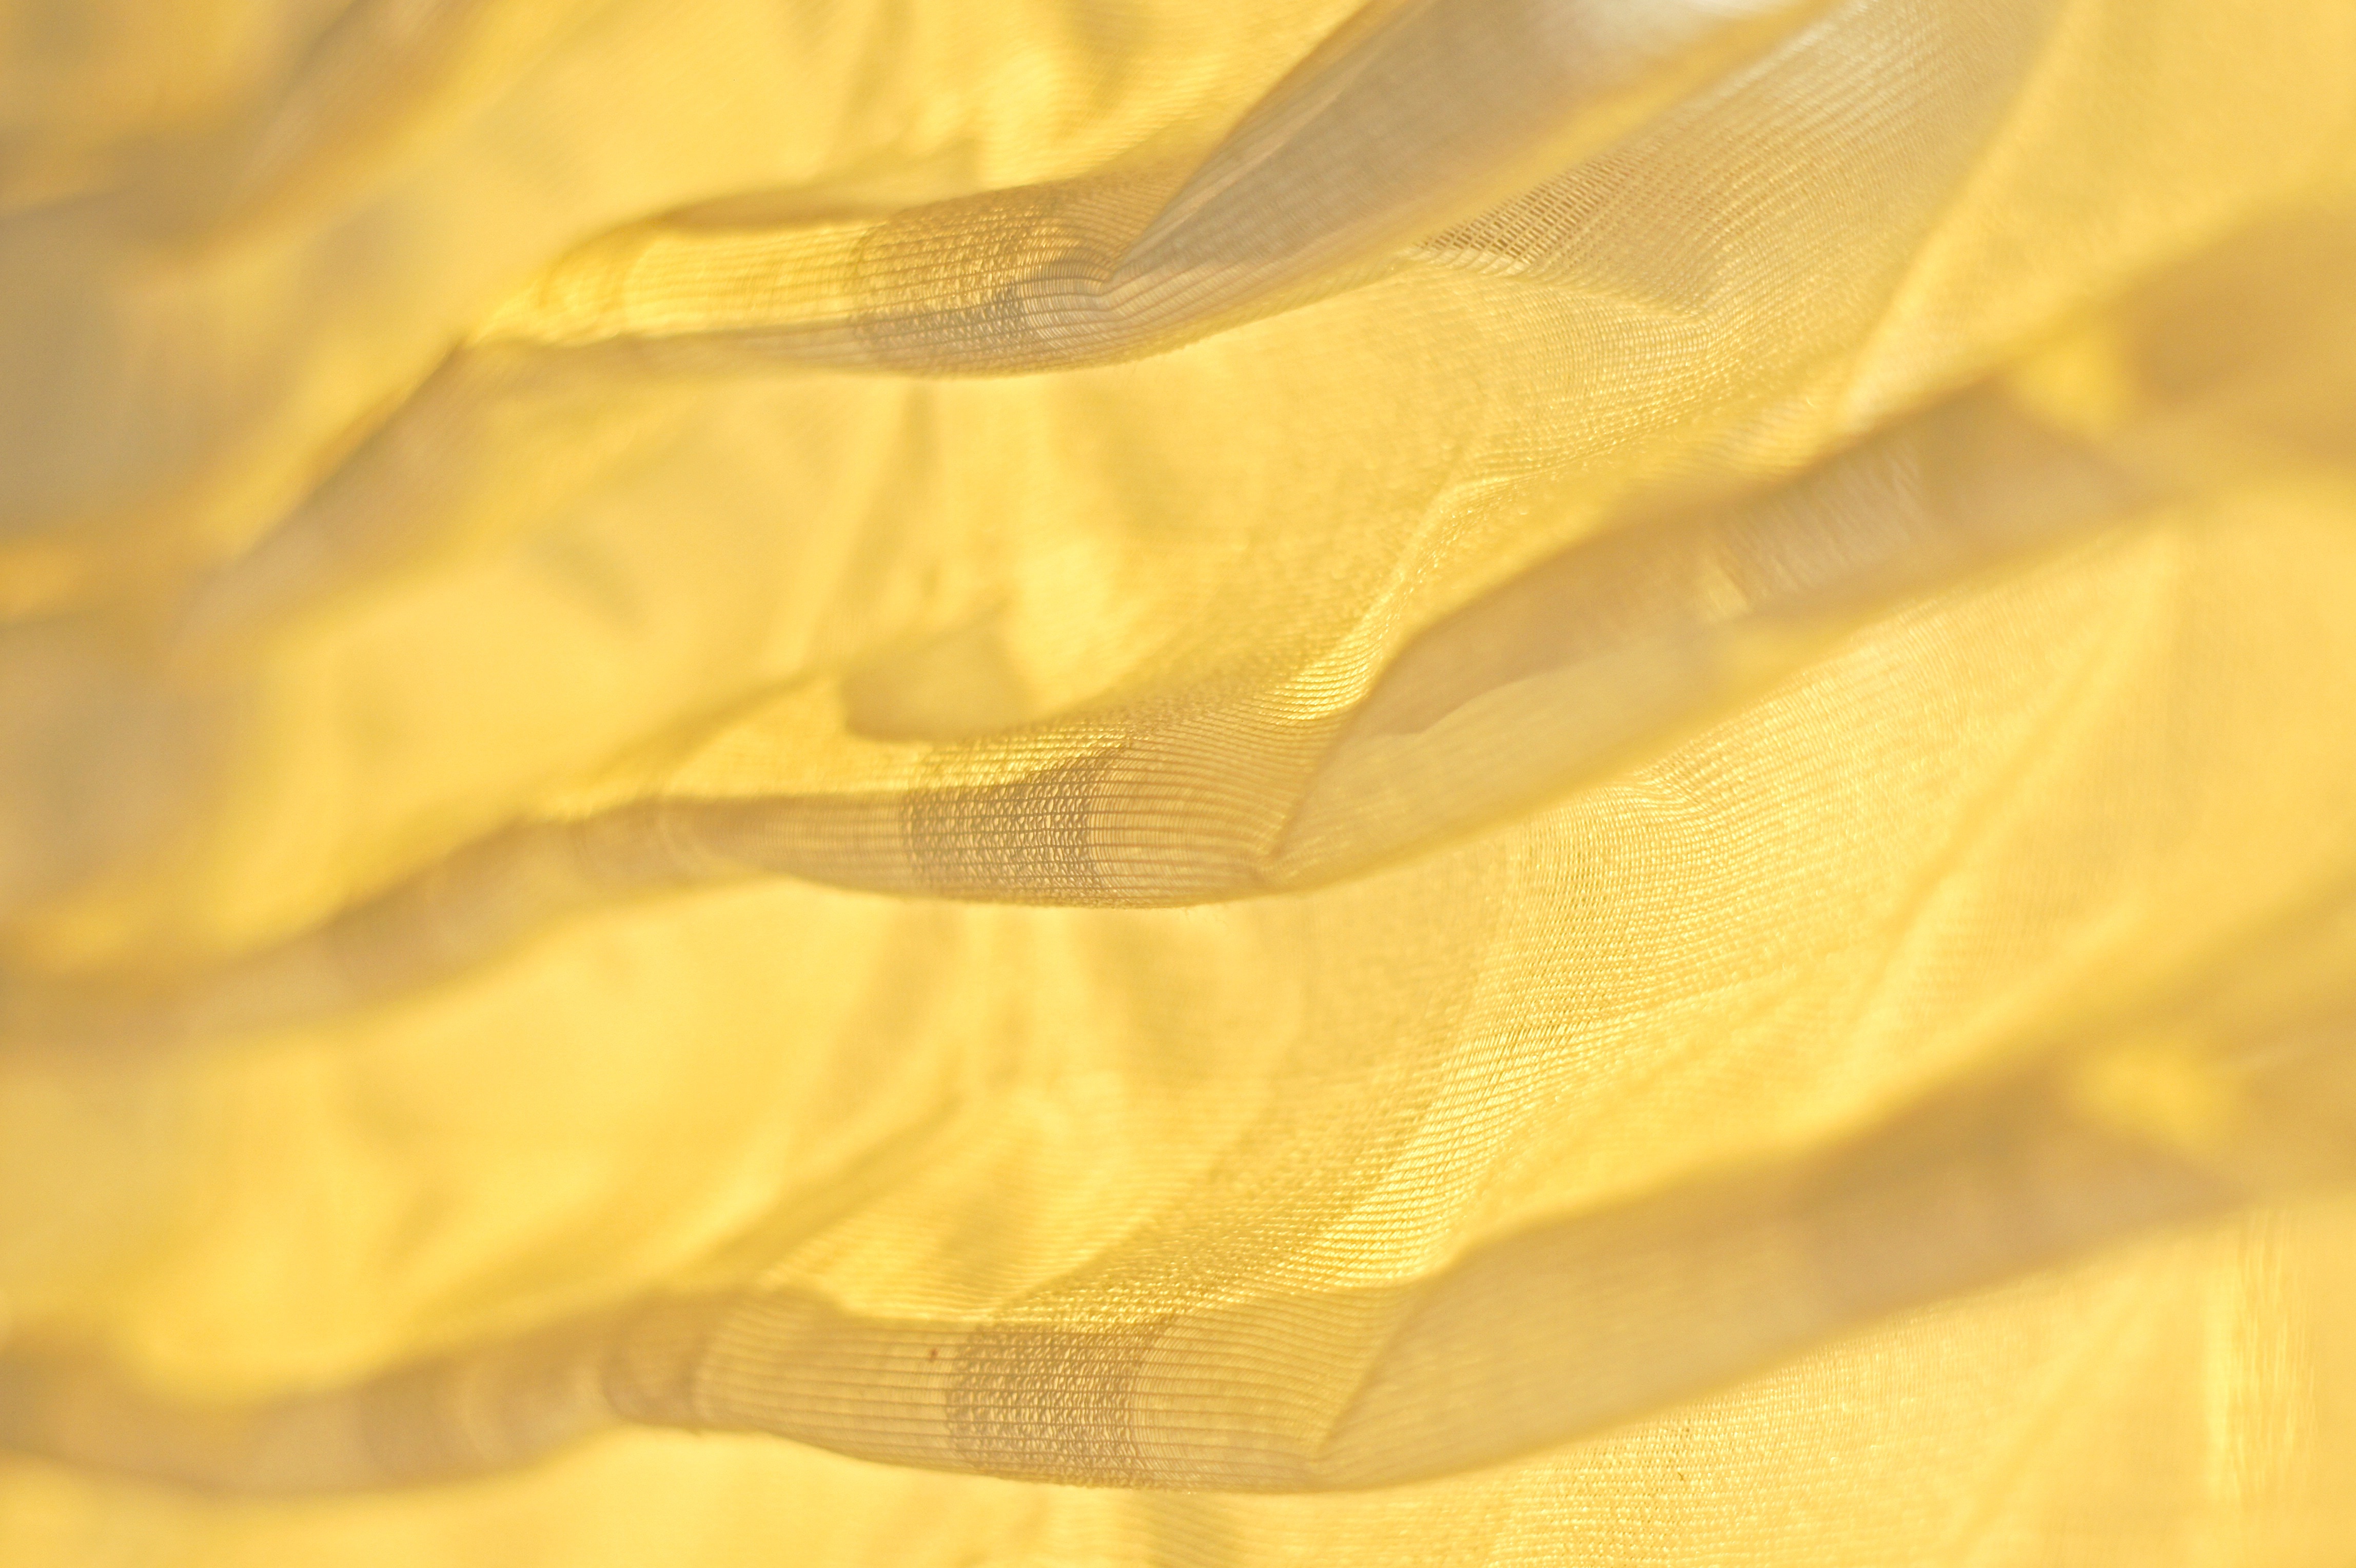 yellow textile